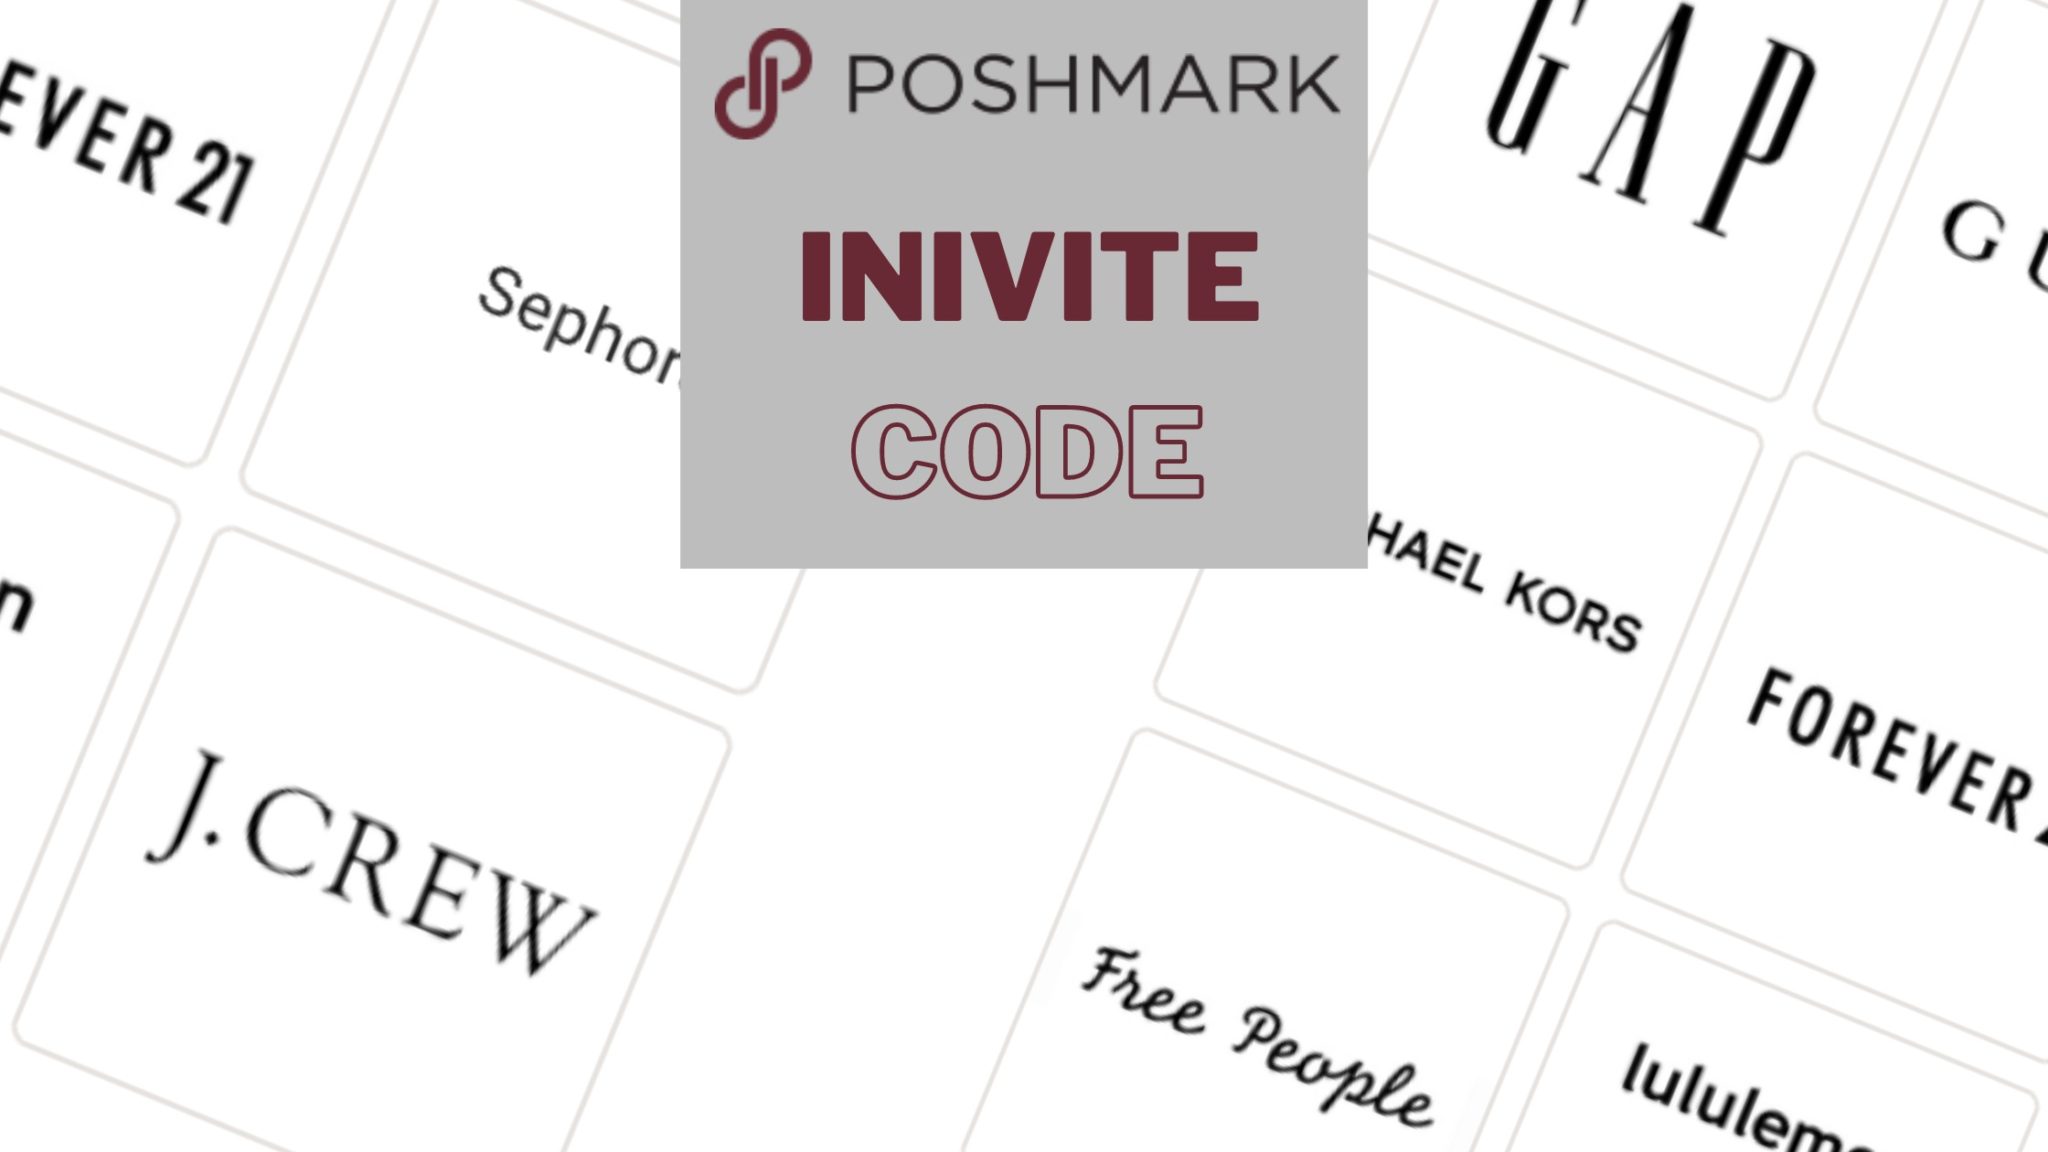 Poshmark Invite Code for 2022 is CASHBACKREVIEWS Get 10